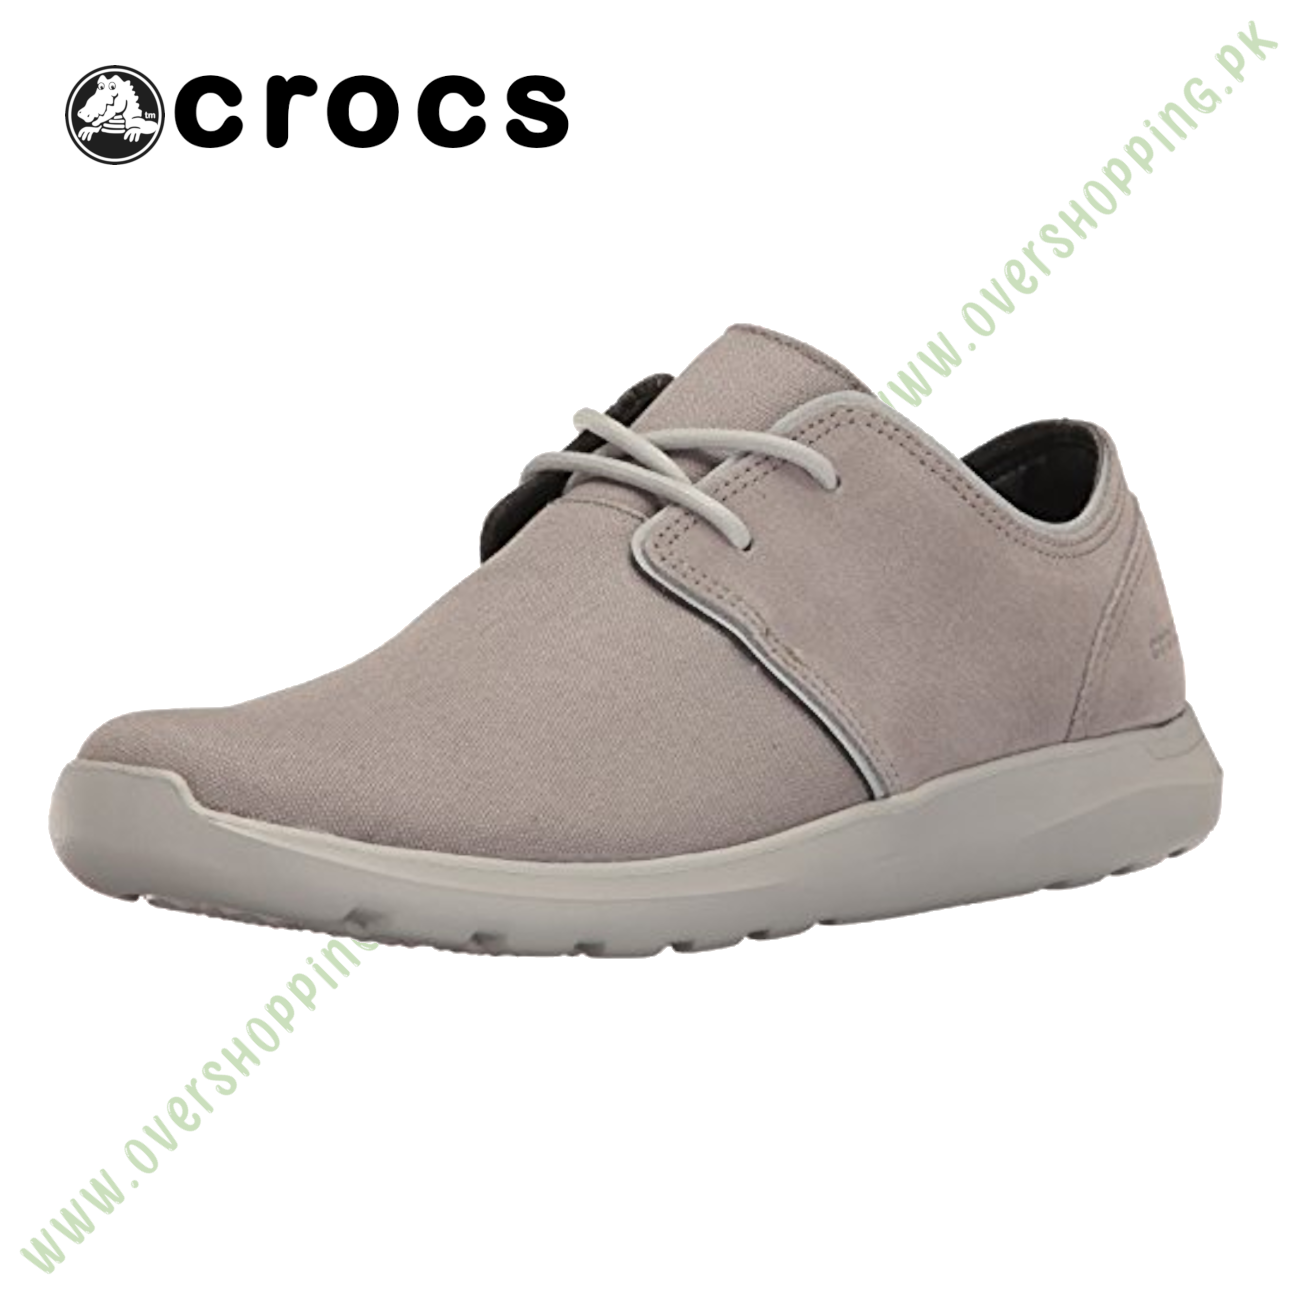 Crocs Men s Kinsale 2-Eye Shoe M Fashion Sneaker